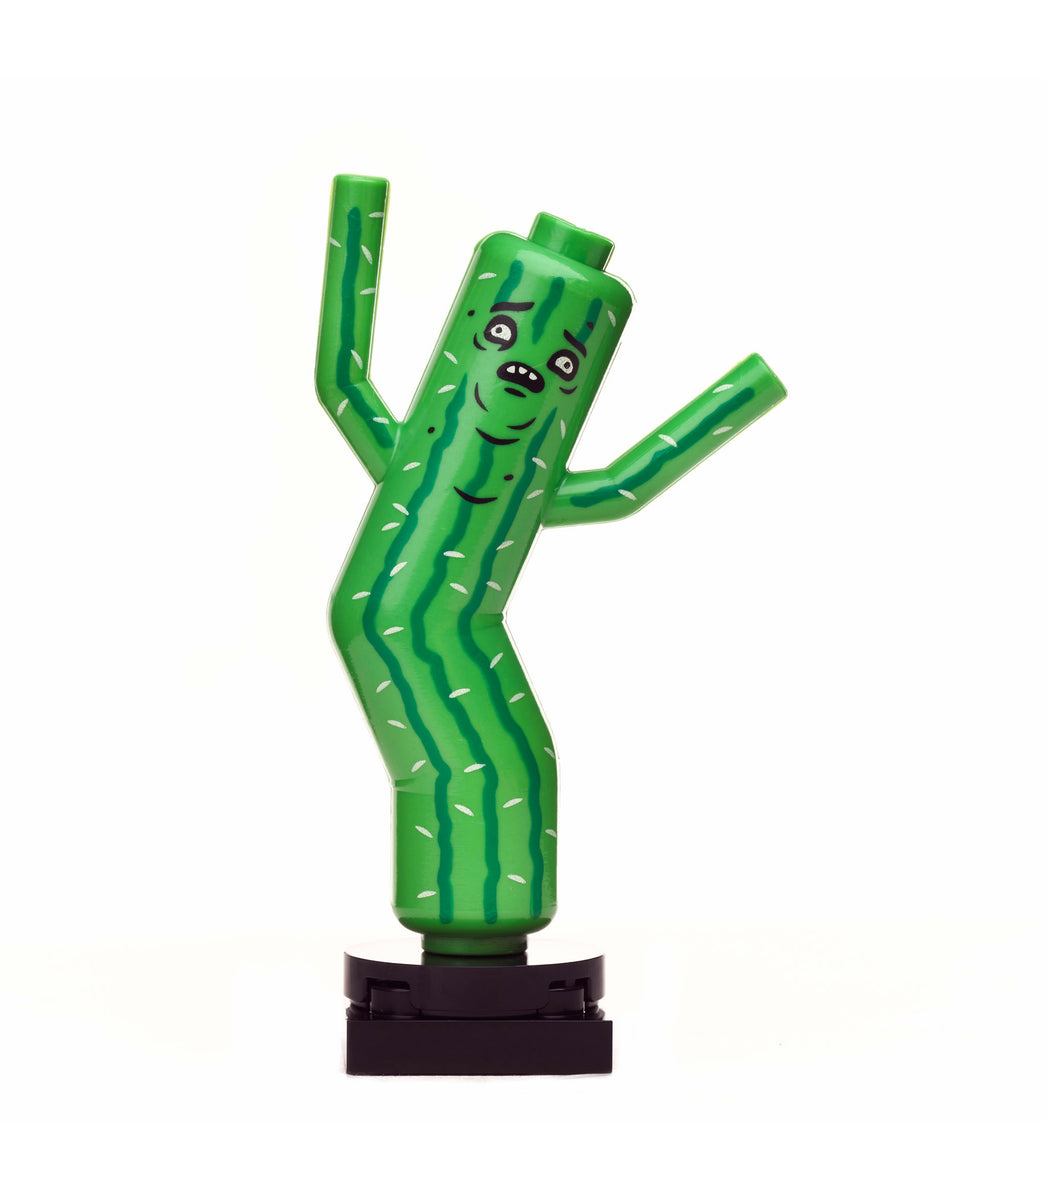 LEGO IDEAS - Cactus Man